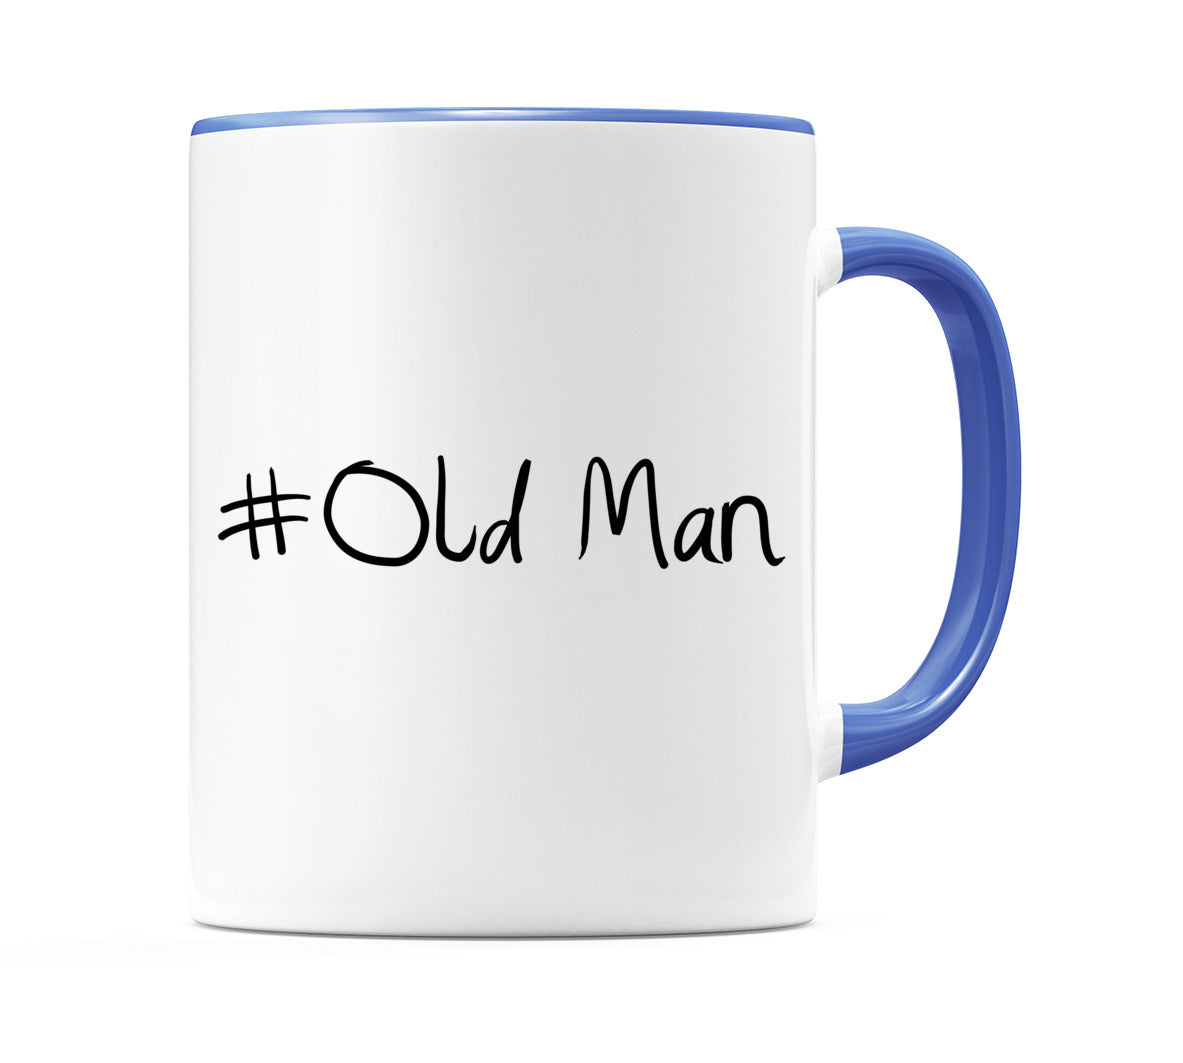 #Old Man Mug